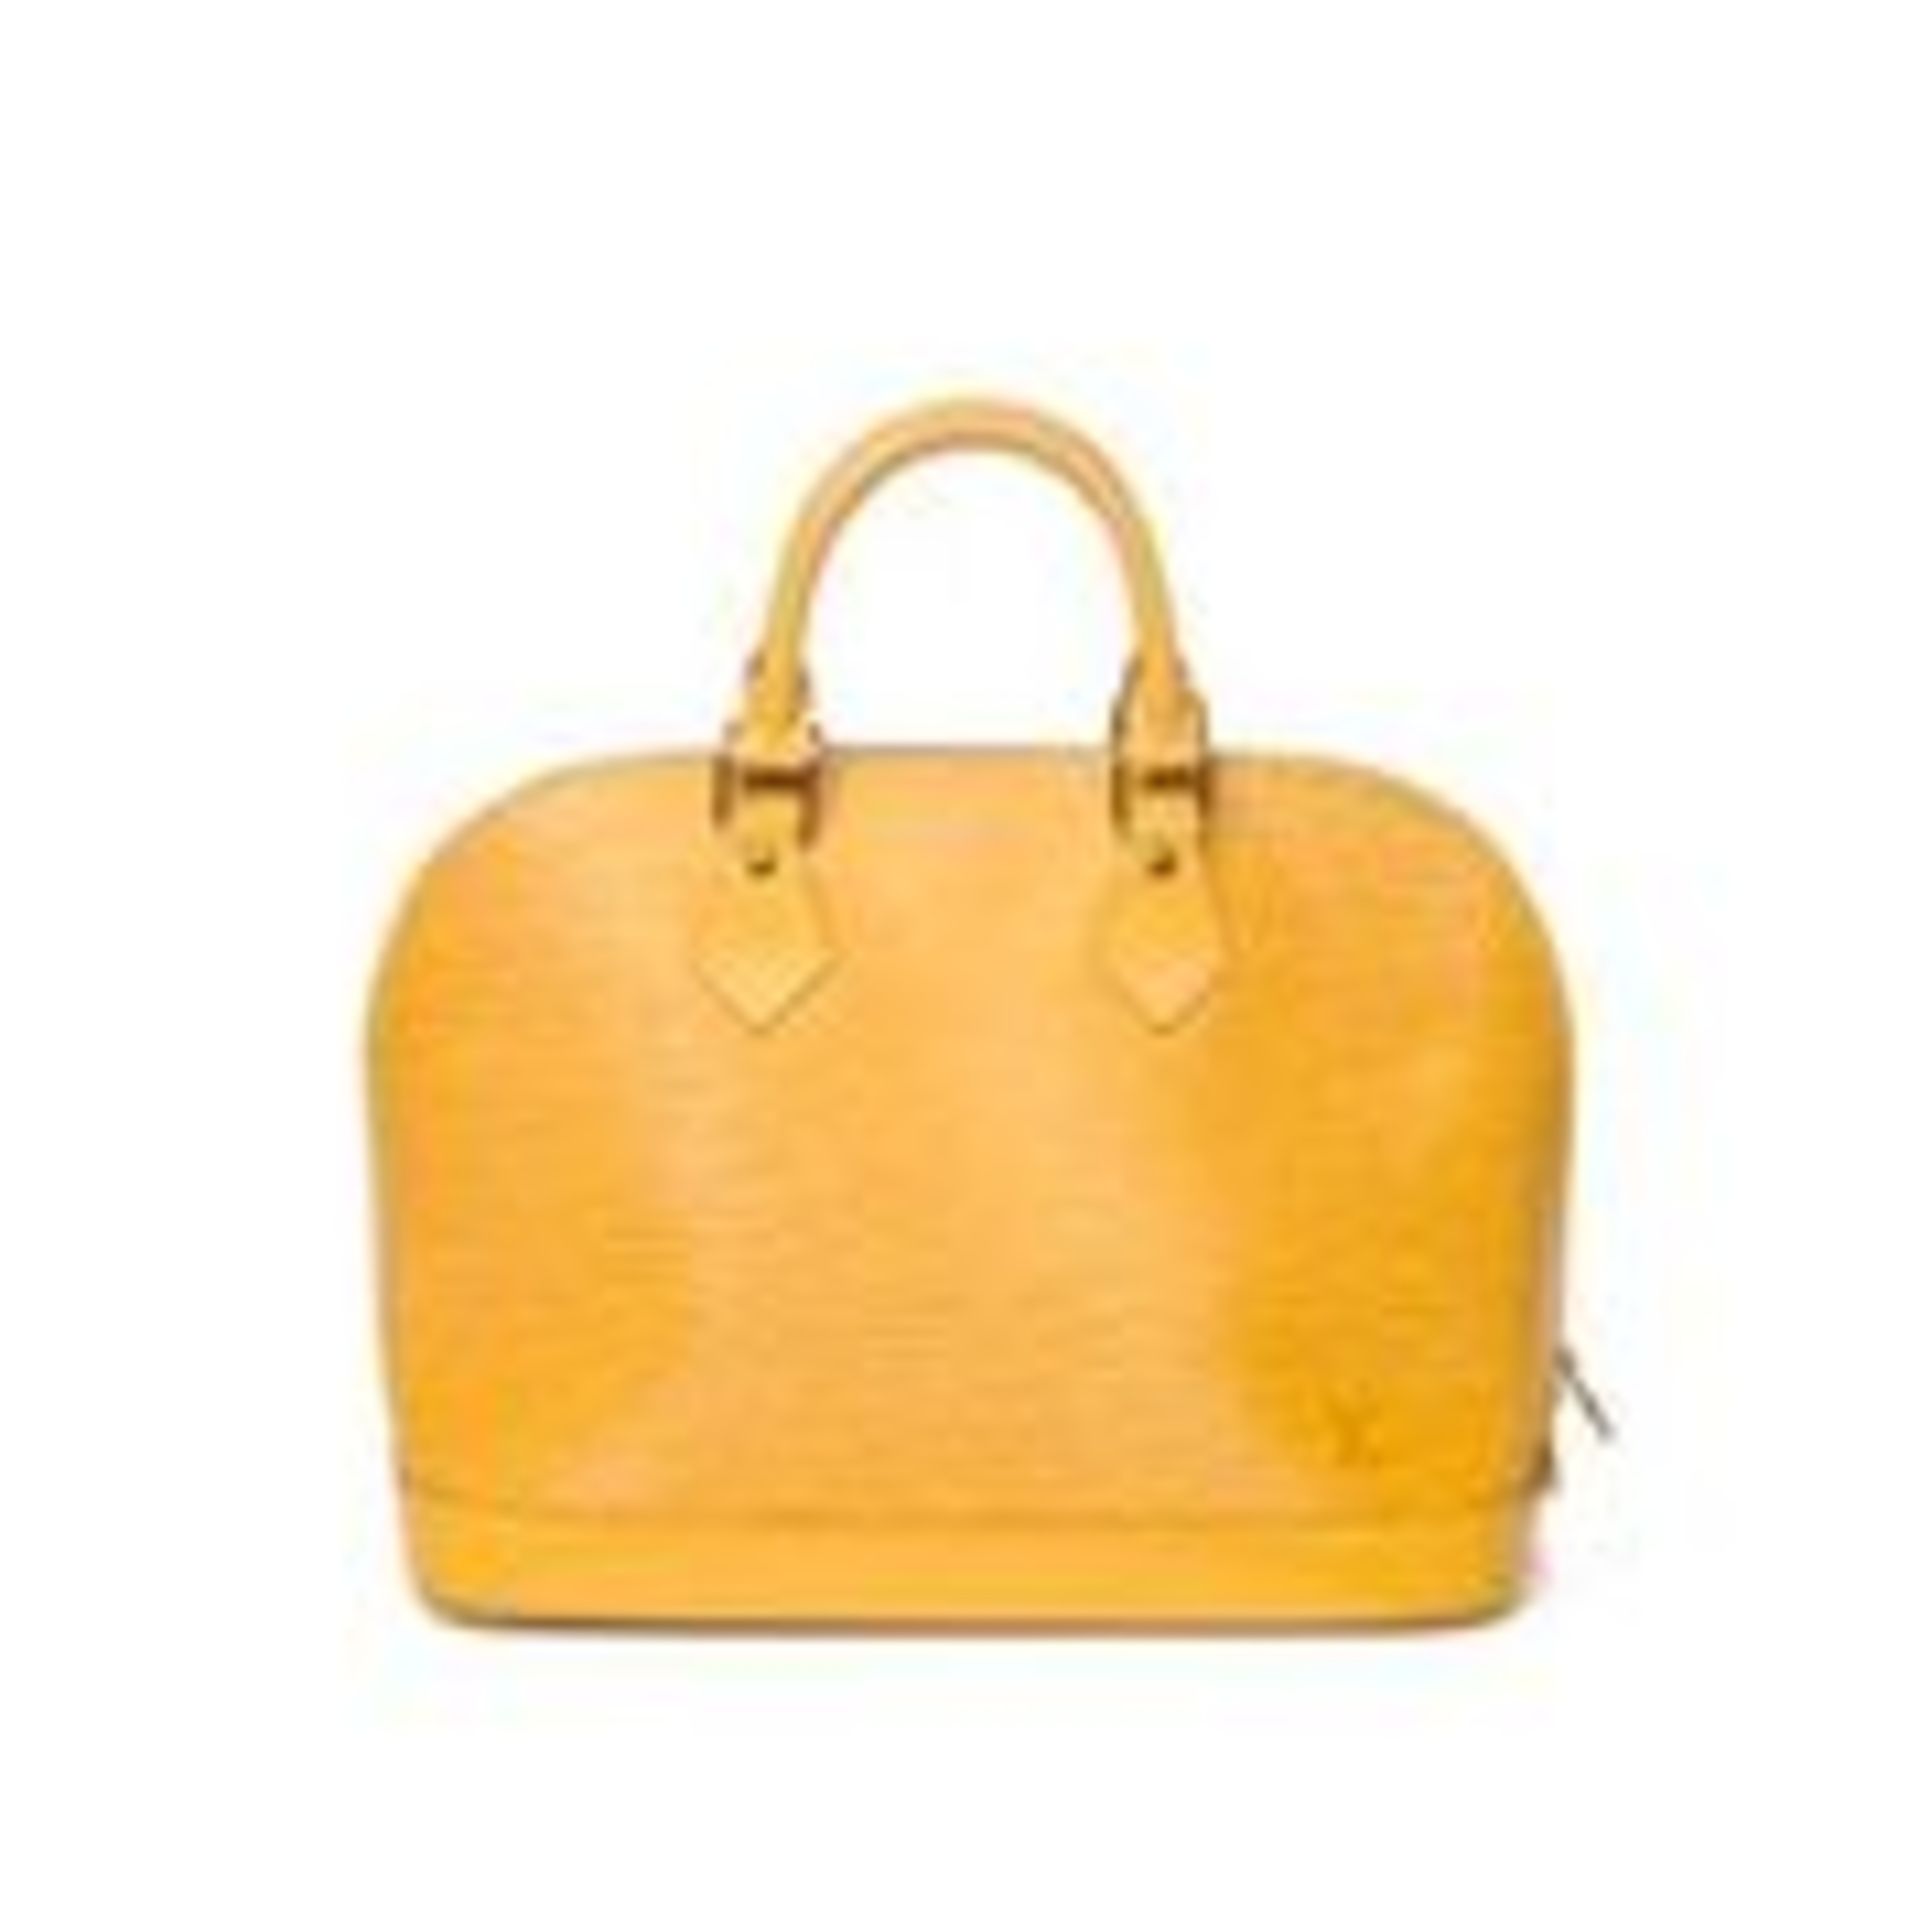 RRP £1,550 Louis Vuitton Alma Handbag Yellow - AAR3538 - Grade A - Please Contact Us Directly For